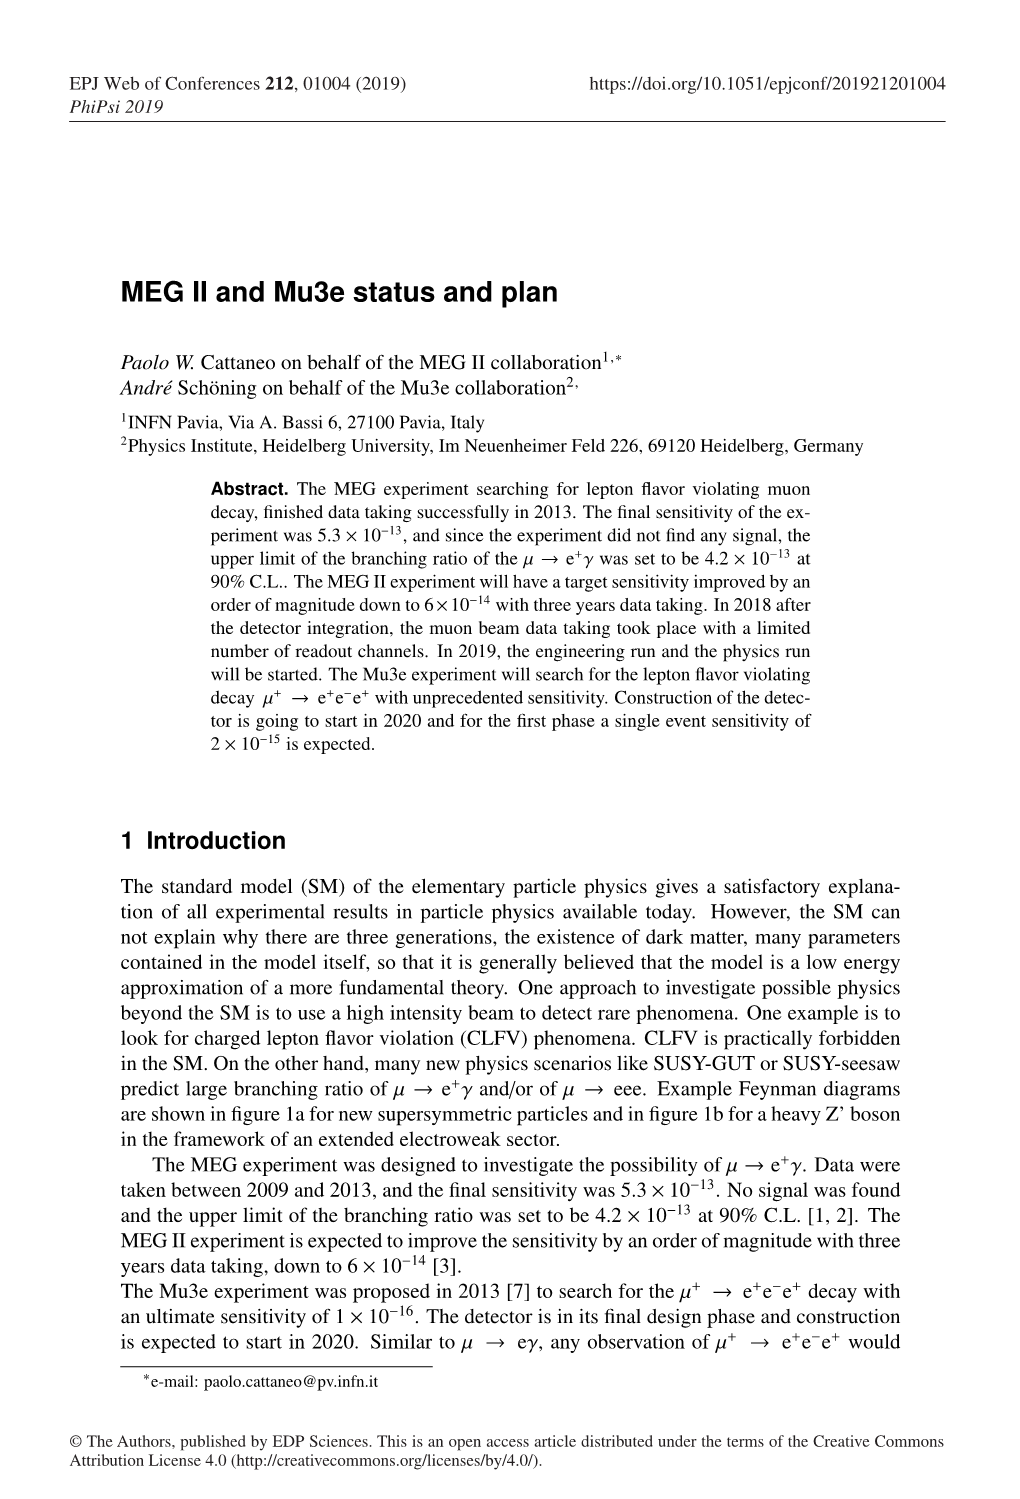 MEG II and Mu3e Status and Plan